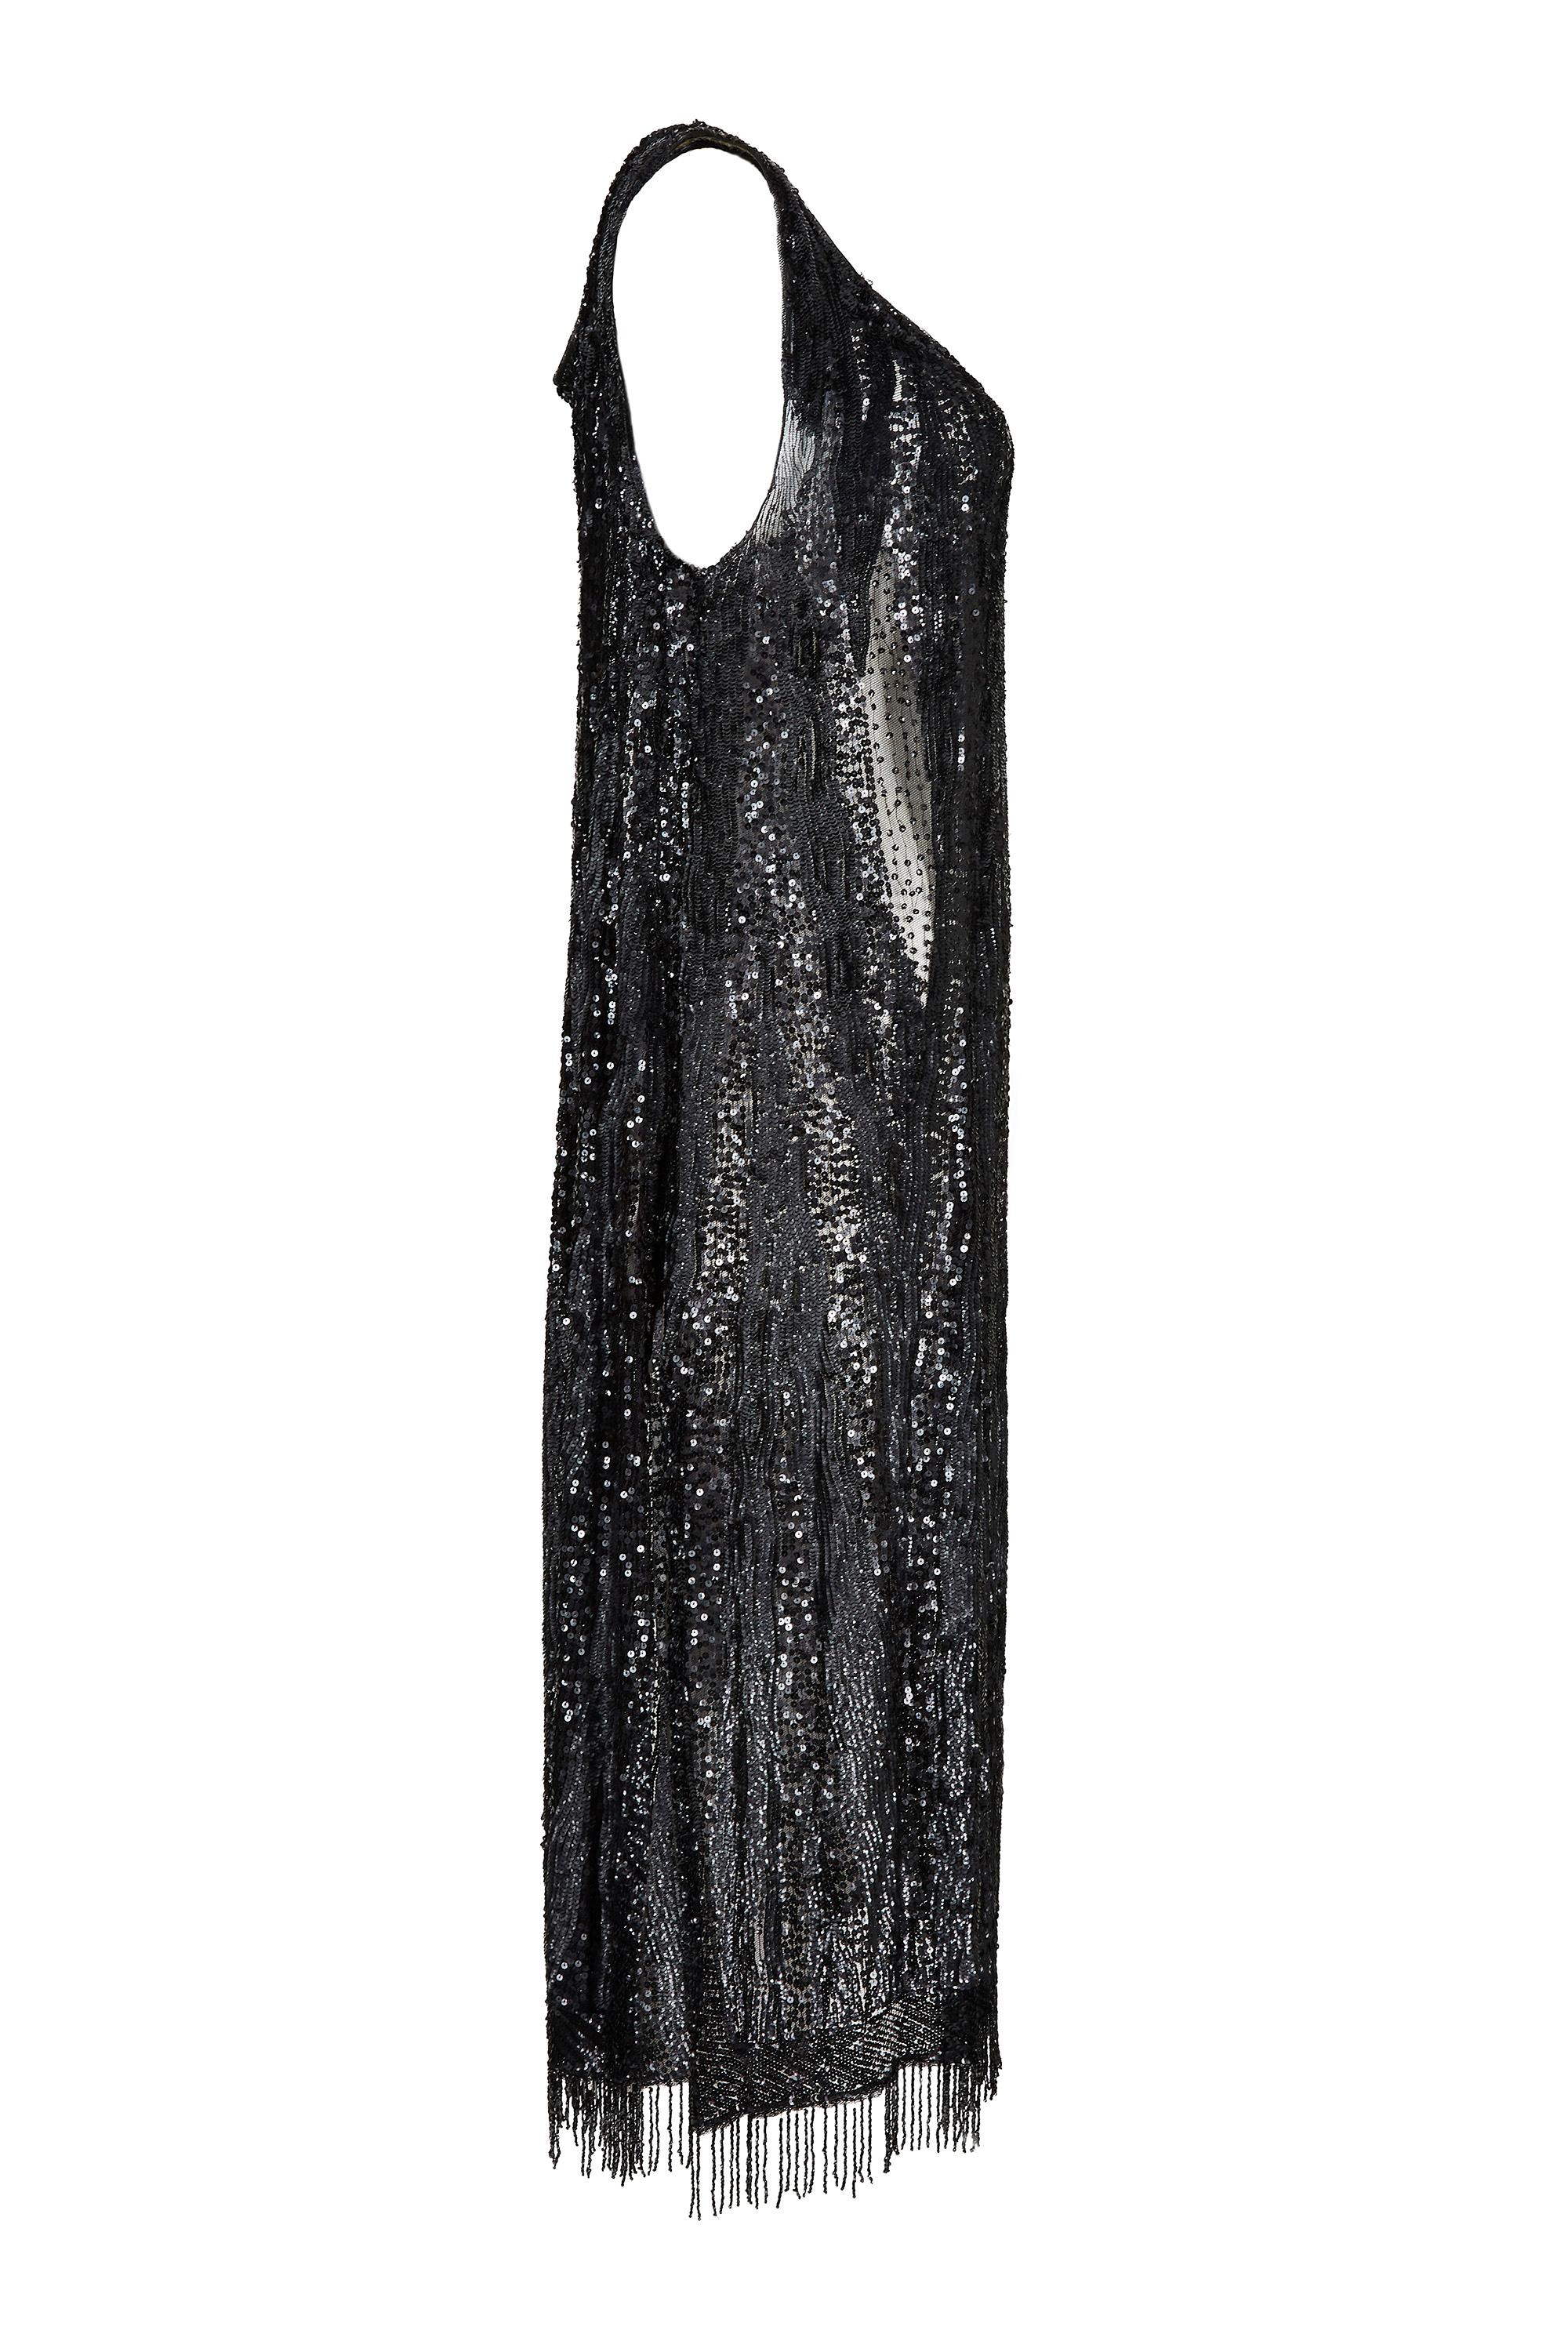 Dieses originale kleine schwarze Kleid aus den 1920er Jahren ist ein nicht etikettiertes Haute Couture Exemplar, das über und über mit Pailletten besetzt ist und sich in einem wirklich hervorragenden antiken Zustand befindet. Dieses exquisite